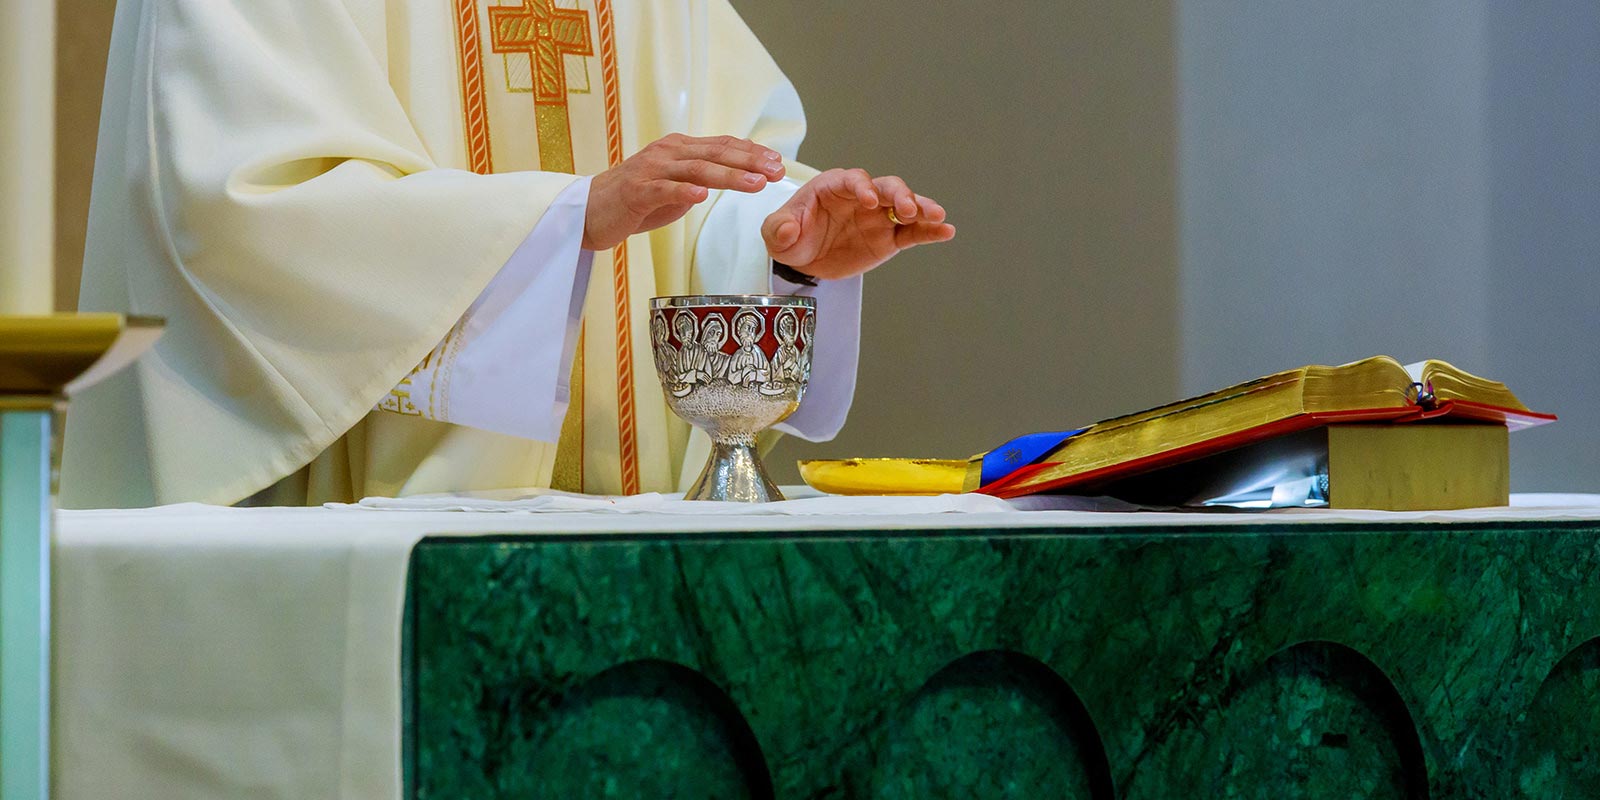 Eucaristia, o padre abençoa o pão e o vinho no altar.